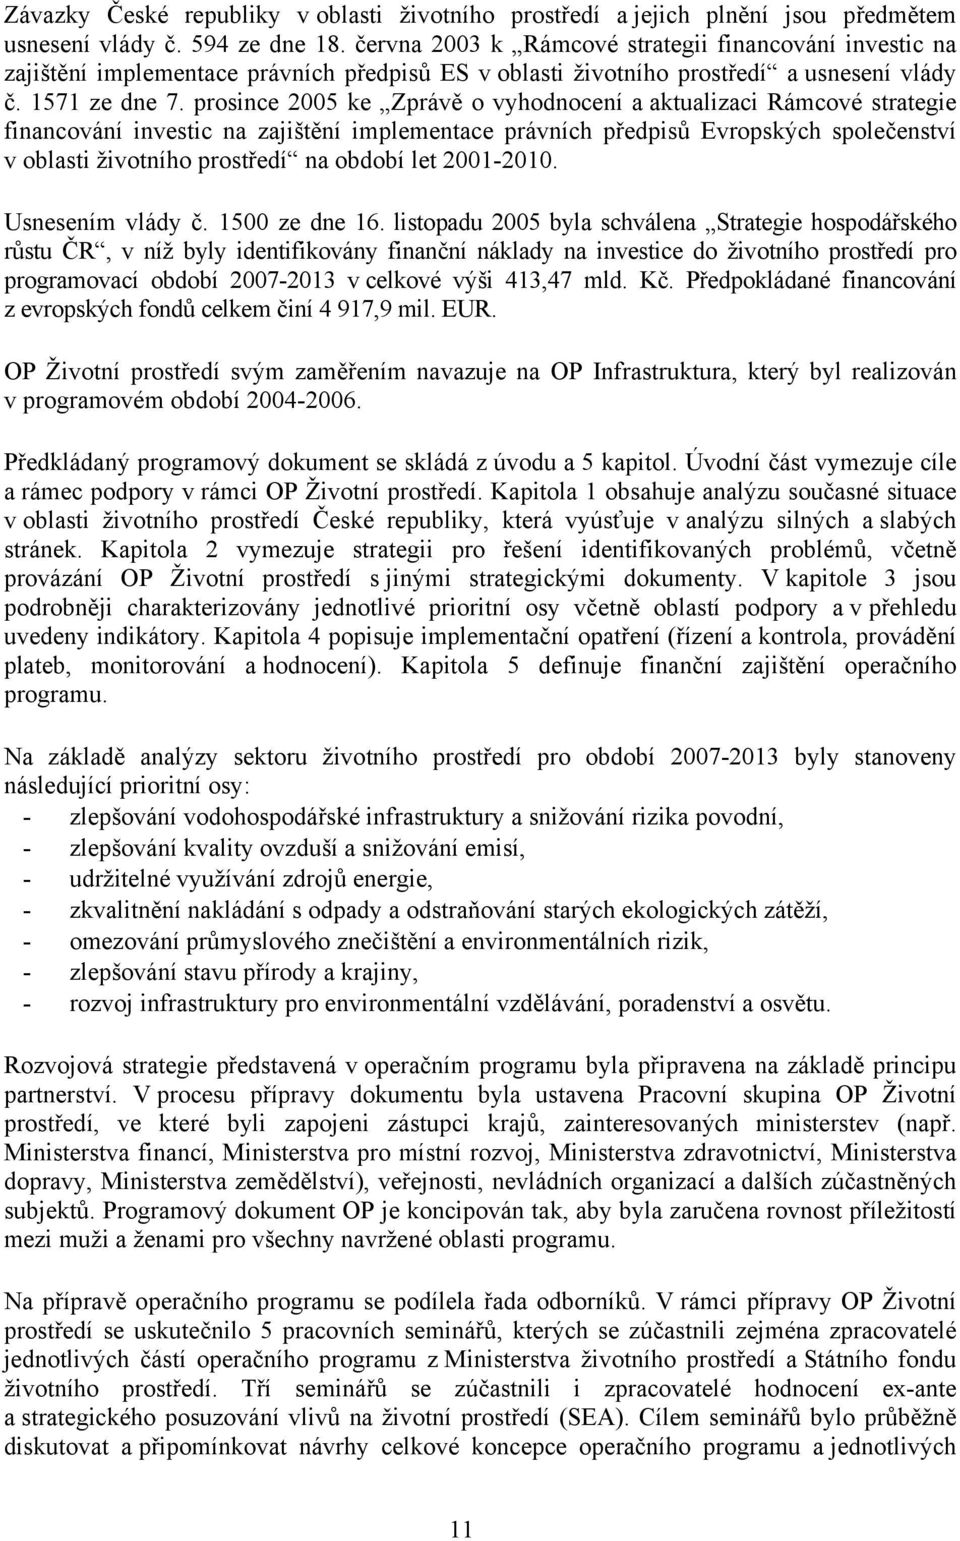 prosince 2005 ke Zprávě o vyhodnocení a aktualizaci Rámcové strategie financování investic na zajištění implementace právních předpisů Evropských společenství v oblasti životního prostředí na období